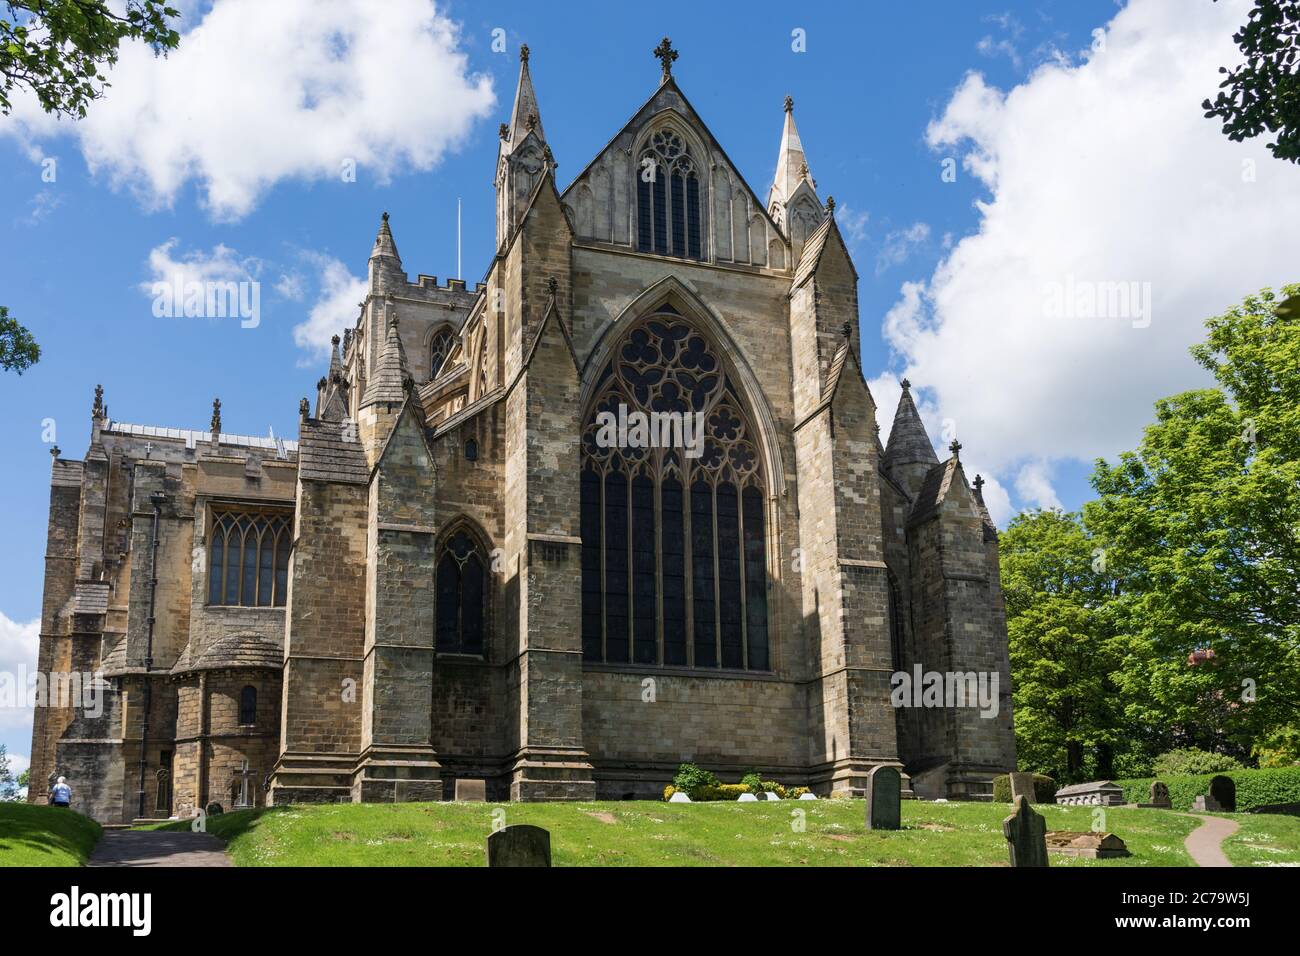 Avec des flèches anciennes et un cimetière avec des pierres à tête en premier plan, l'extrémité est de la cathédrale de Ripon peut être vue, Ripon, North Yorkshire, Royaume-Uni. Banque D'Images